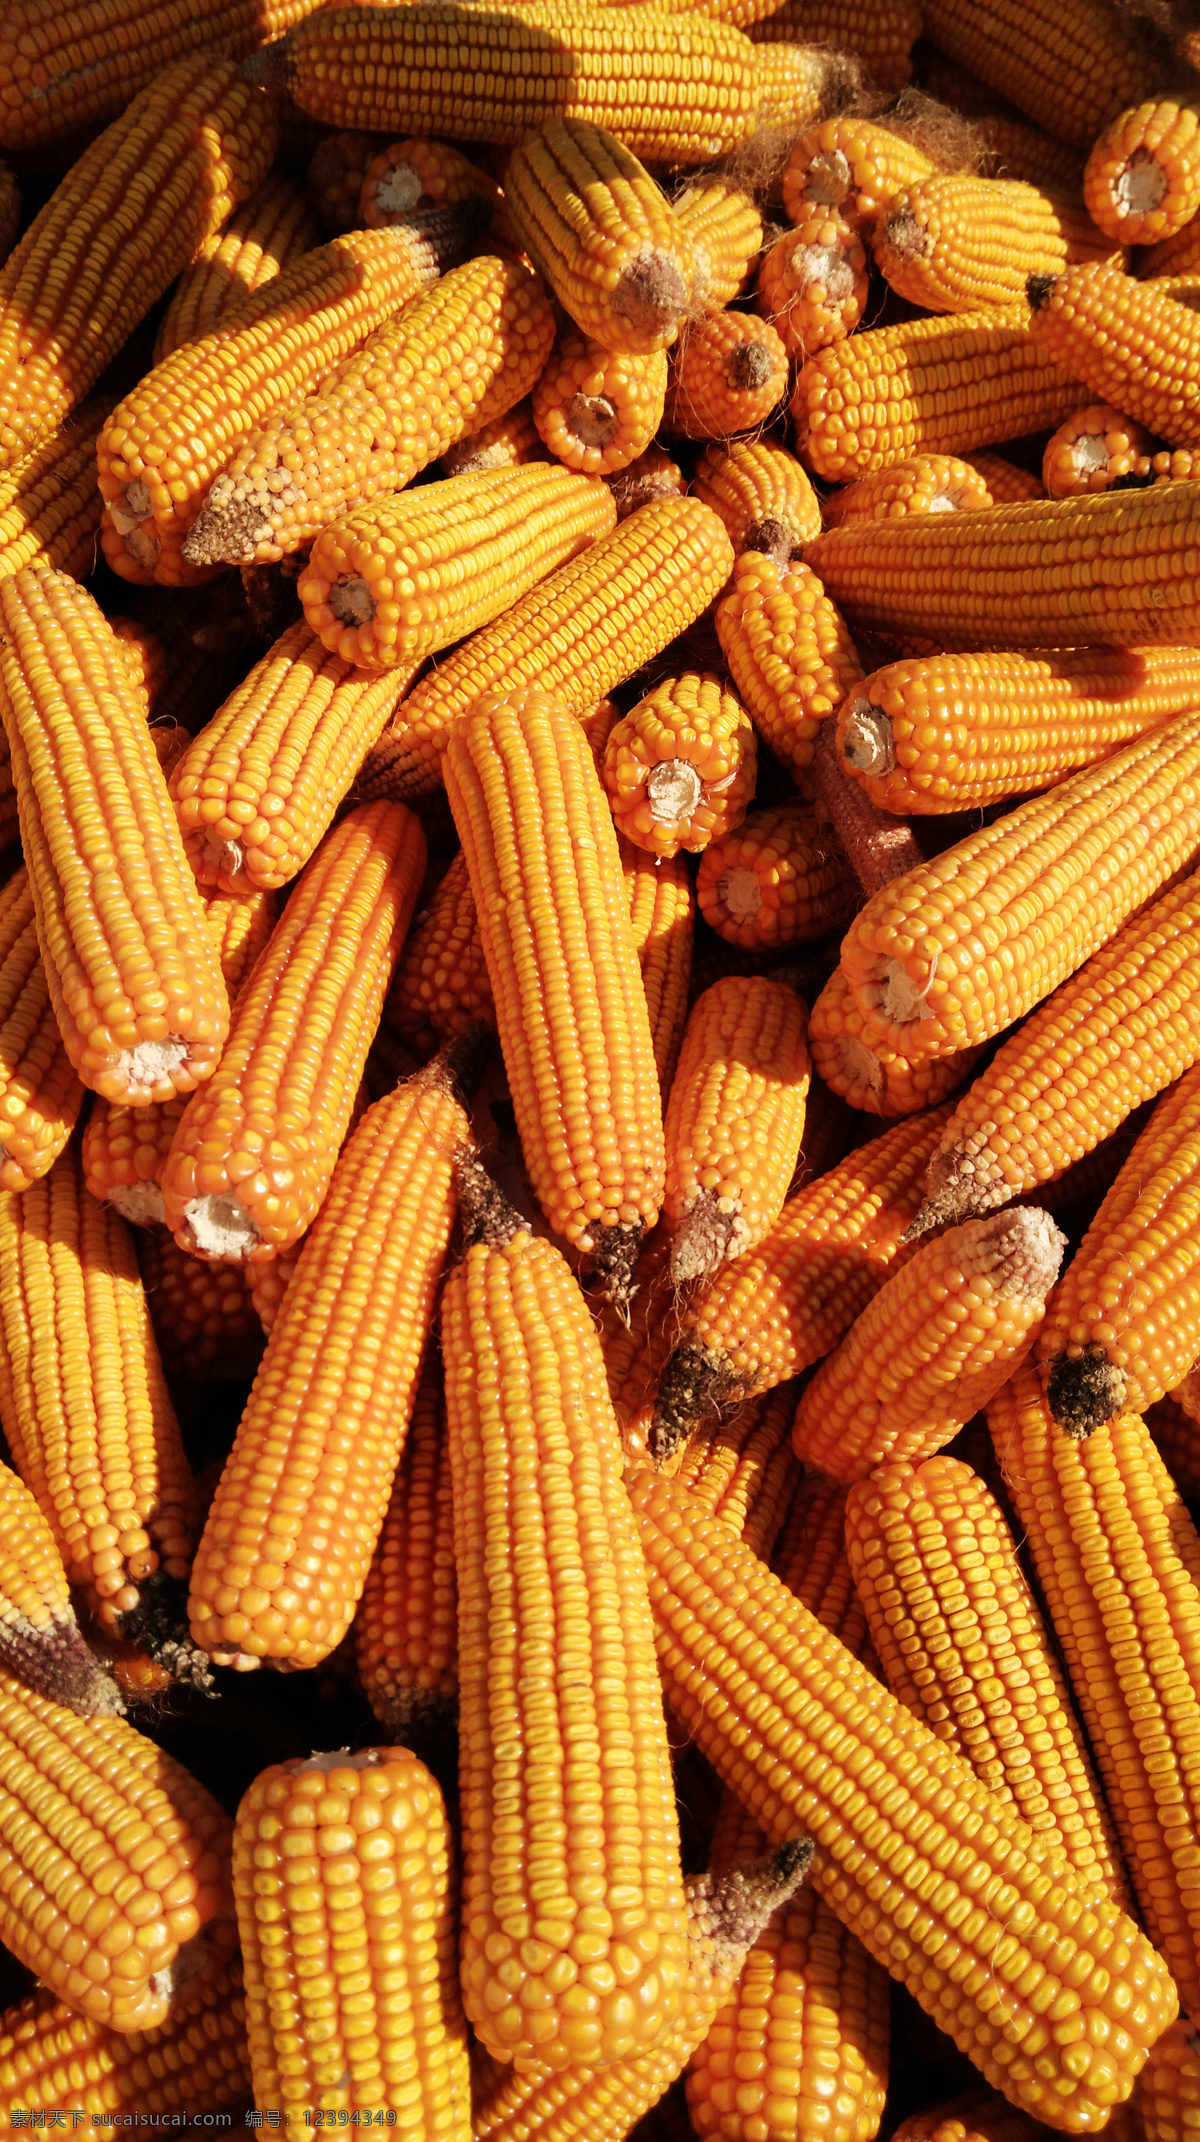 玉米 丰收 老玉米 苞米 农作物 种子 丰收景象 生物世界 蔬菜